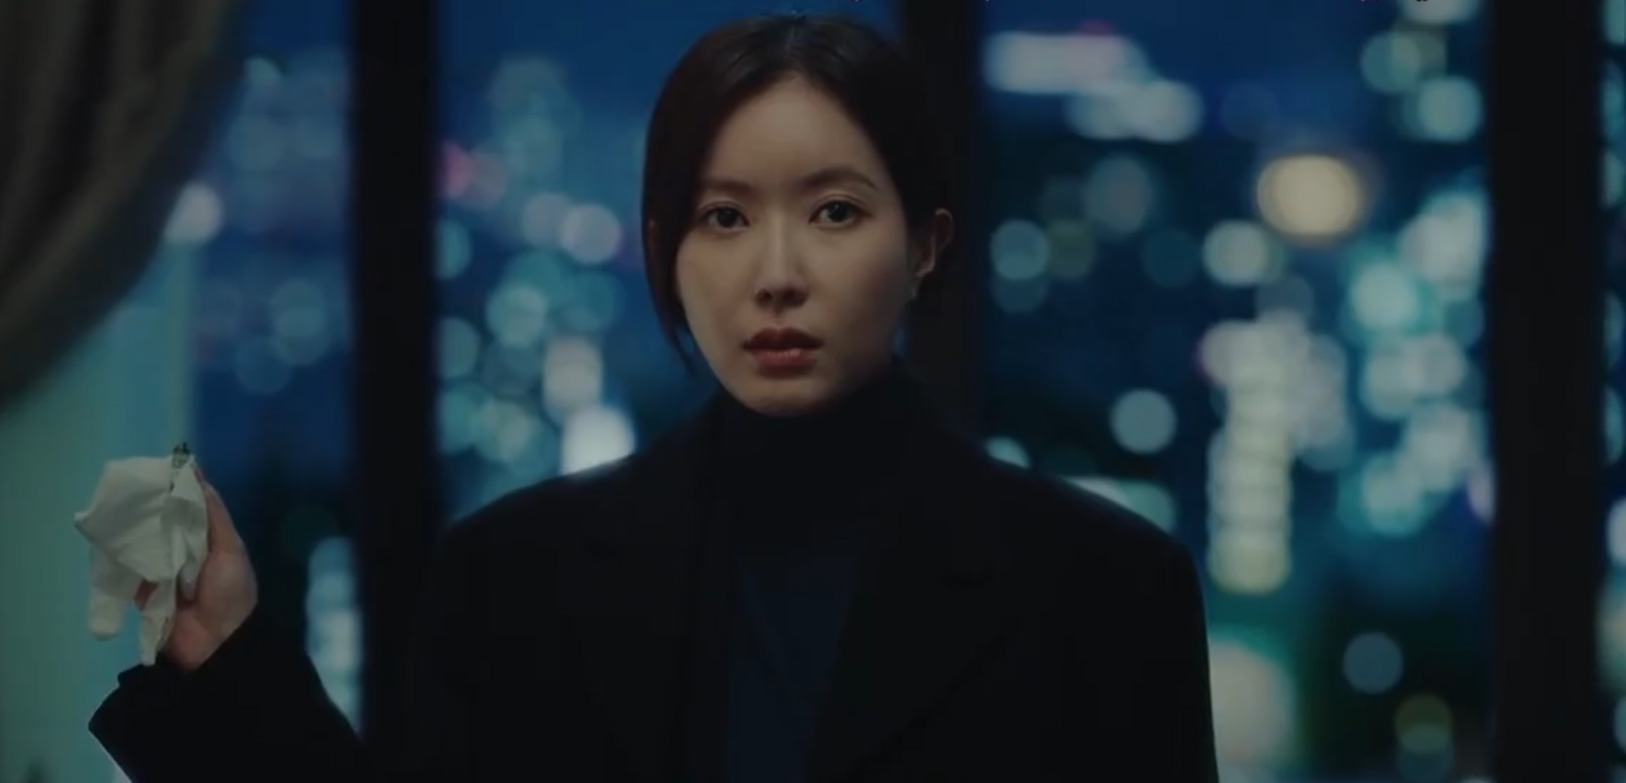 Bác sĩ luật sư tập 5: So Ji Sub tiết lộ sự thật chấn động cho tình cũ, bắt tay với Shin Sung Rok - Ảnh 3.